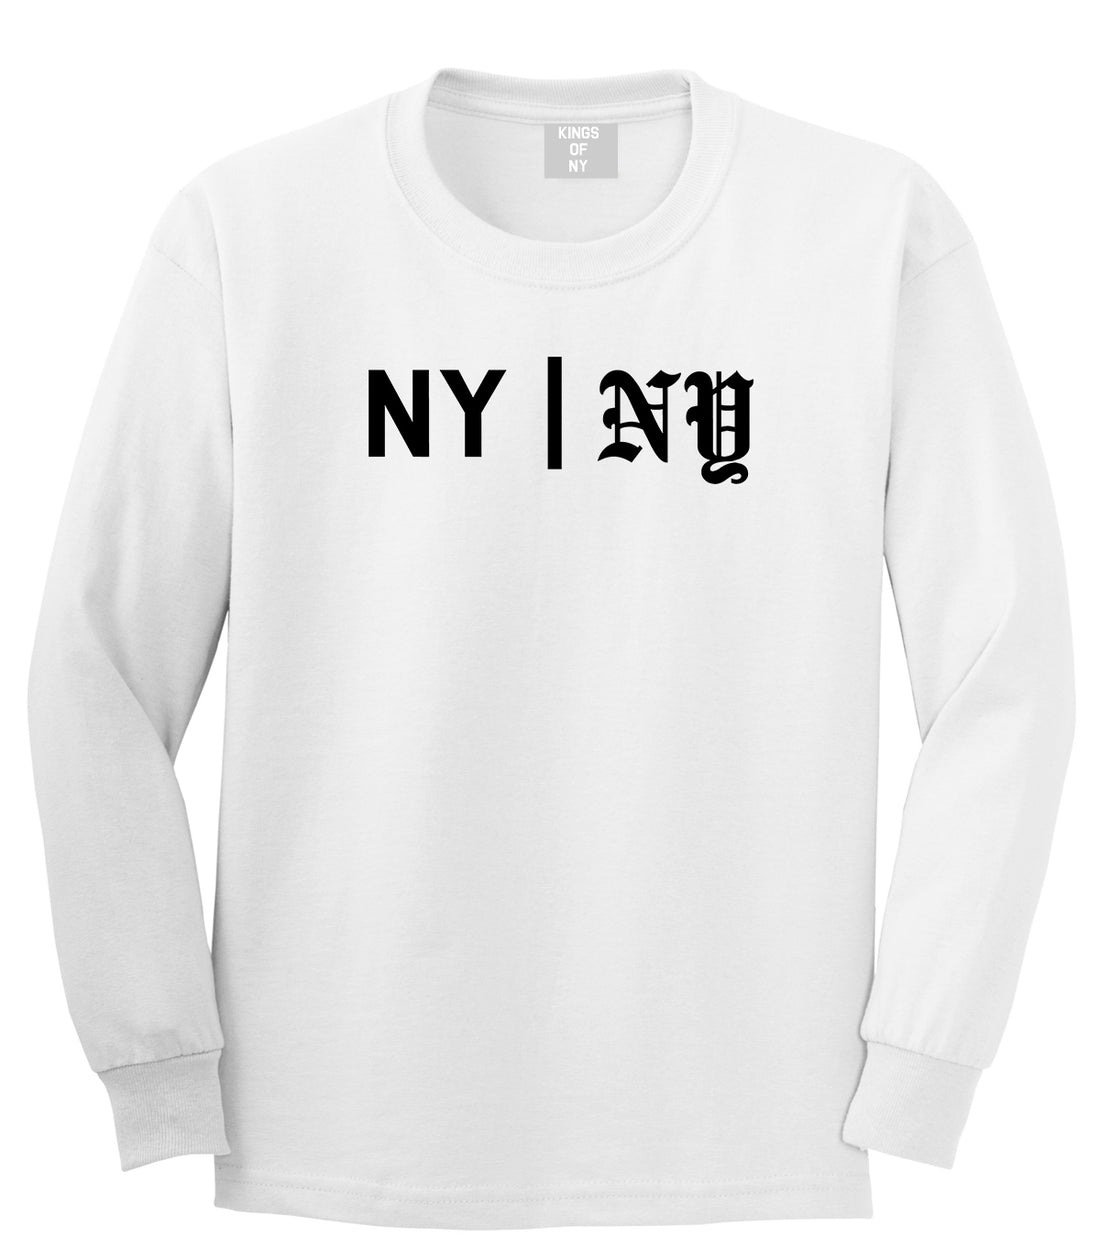 NY vs NY Mens Long Sleeve T-Shirt White